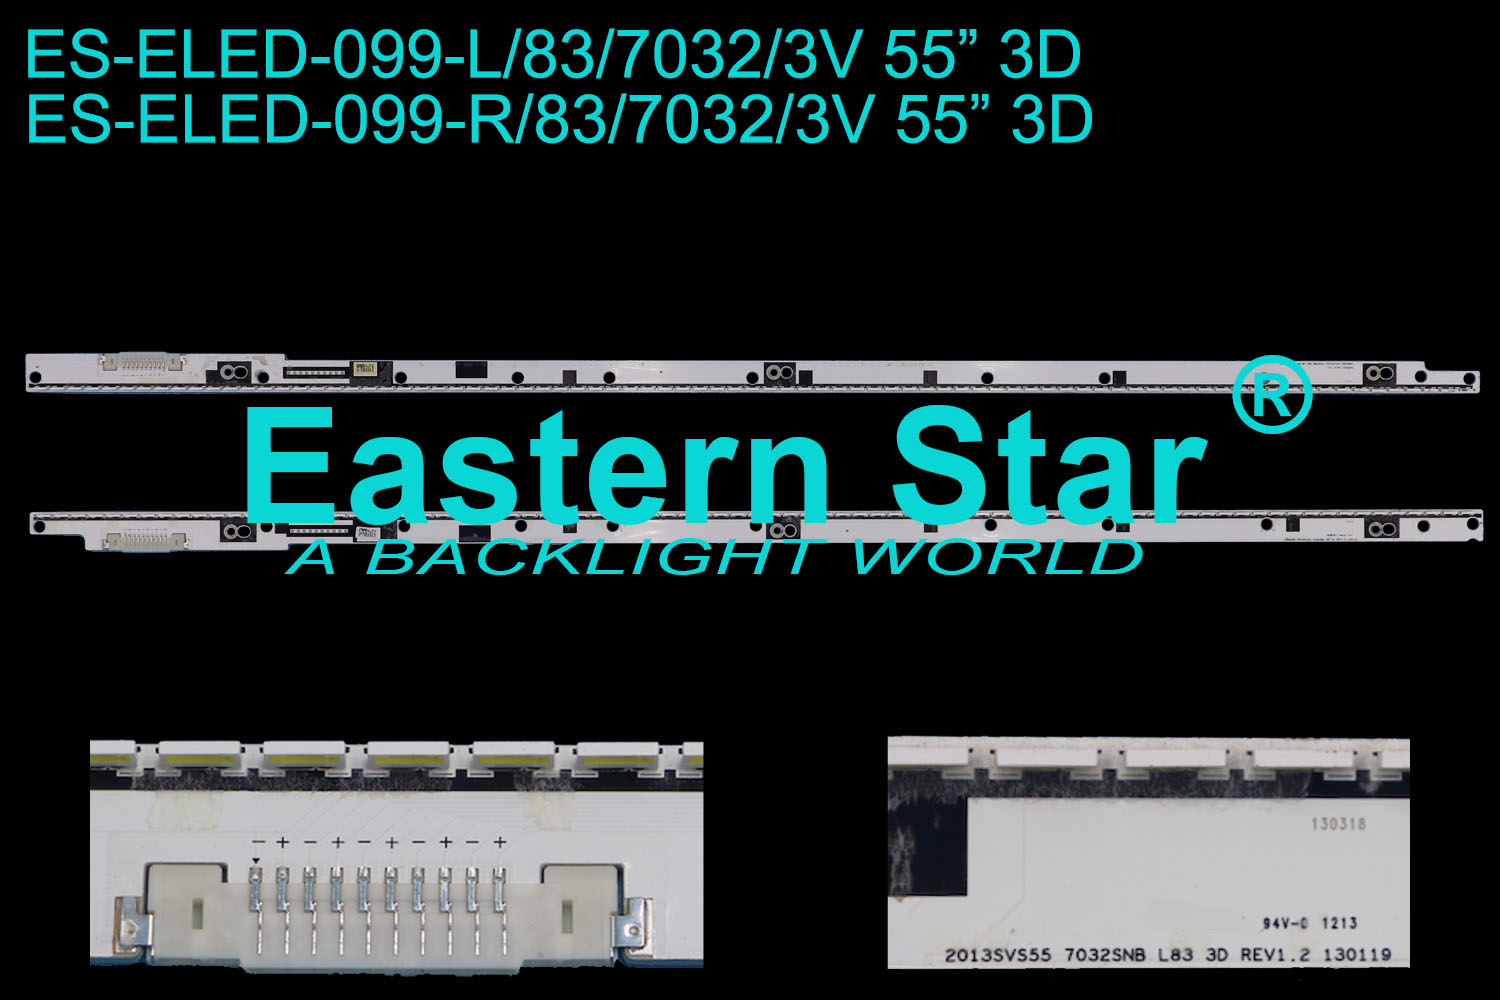 ES-ELED-099 ELED/EDGE TV backlight use for Samsung 55''  2013SVS55 7032SNB L83 3D REV1.2 130119